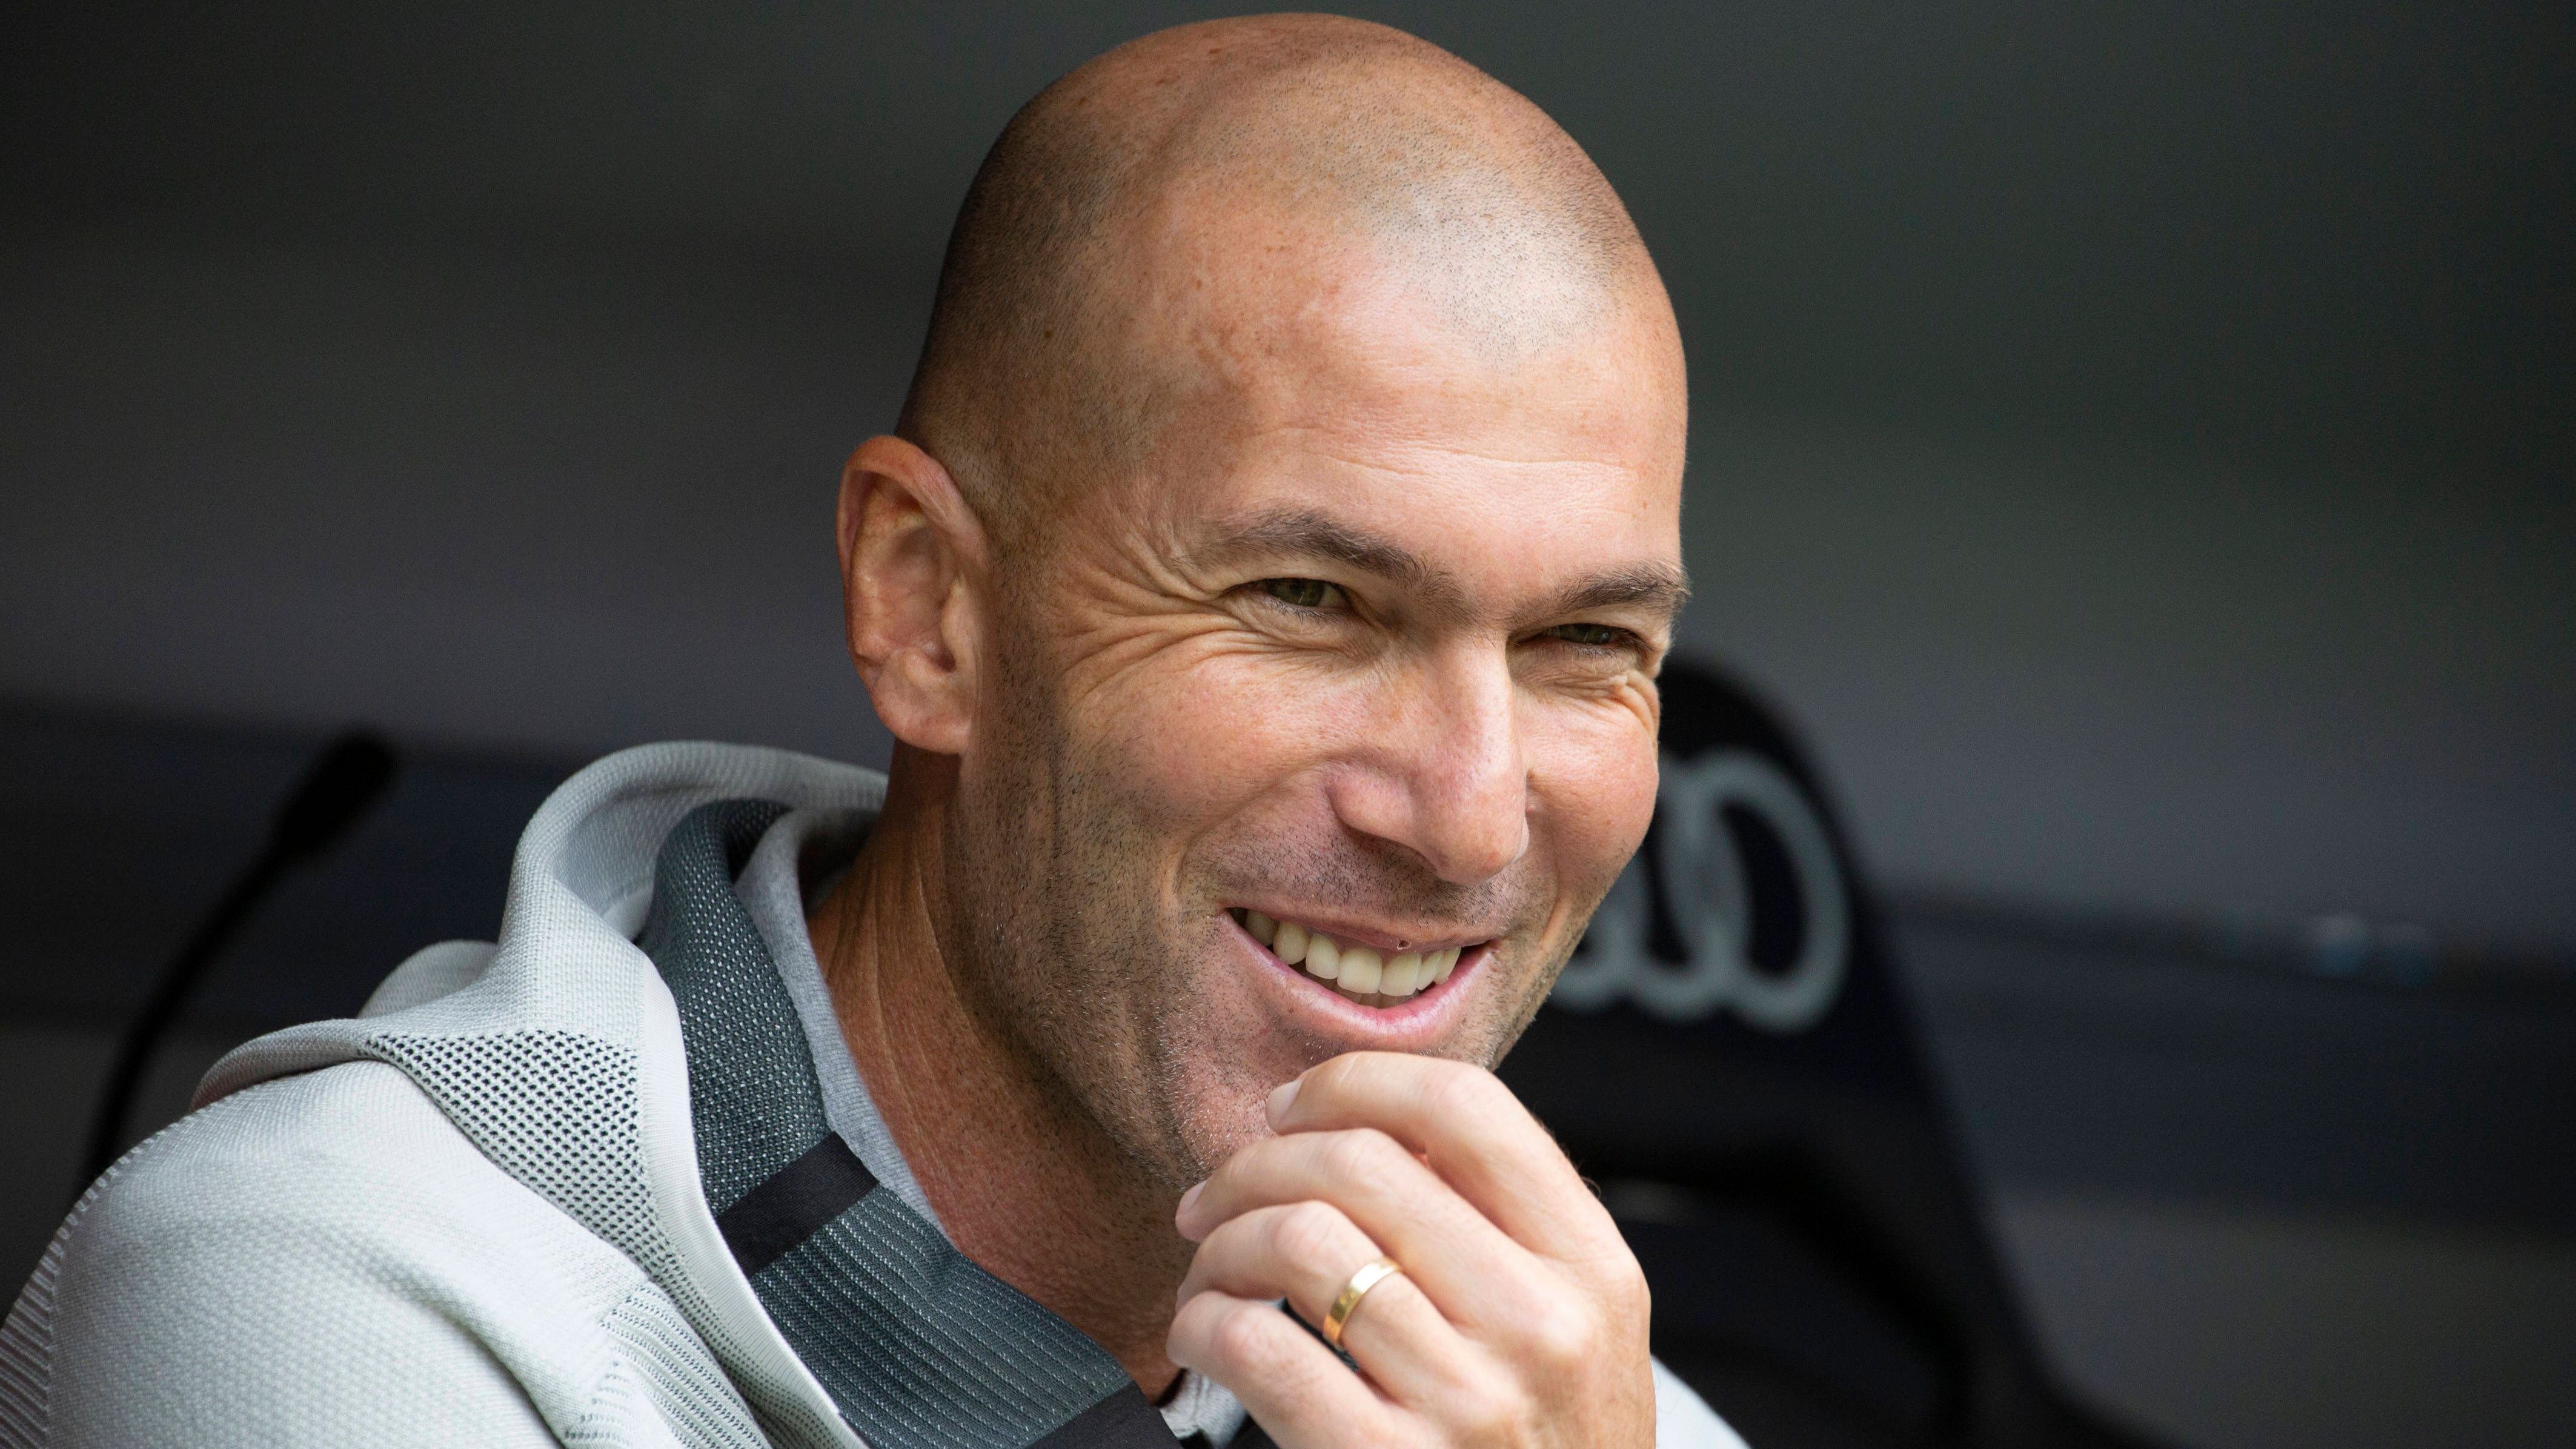 <strong>Zinedine Zidane (vereinslos)</strong><br>... ist seit 2021 ohne Trainerjob, damals ging seine zweite Ära bei Real Madrid zu Ende. Während seiner ersten Ära gewann er mit den "Königlichen" drei Mal in Folge die Champions League. In München, wo 2025 das Finale der Königsklasse stattfinden wird, dürfte der Franzose aber demnächst nicht auftauchen, zumindest nicht als Bayern-Coach.&nbsp;